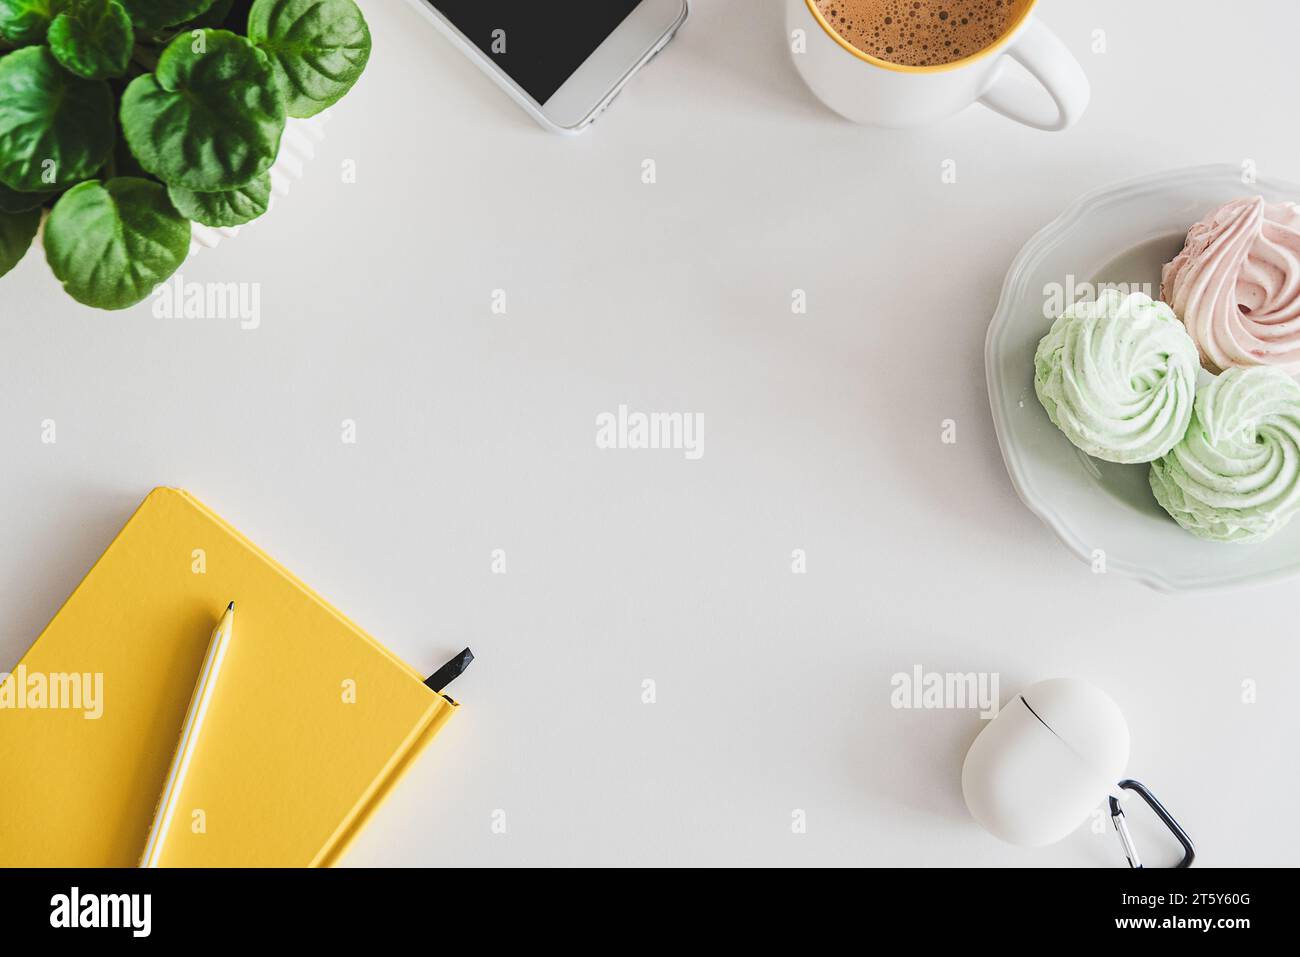 Maquette avec tablette, smartphone, ordinateur portable, tasse à café, nourriture et plante sur table blanche. Vue de dessus. Pose à plat Banque D'Images